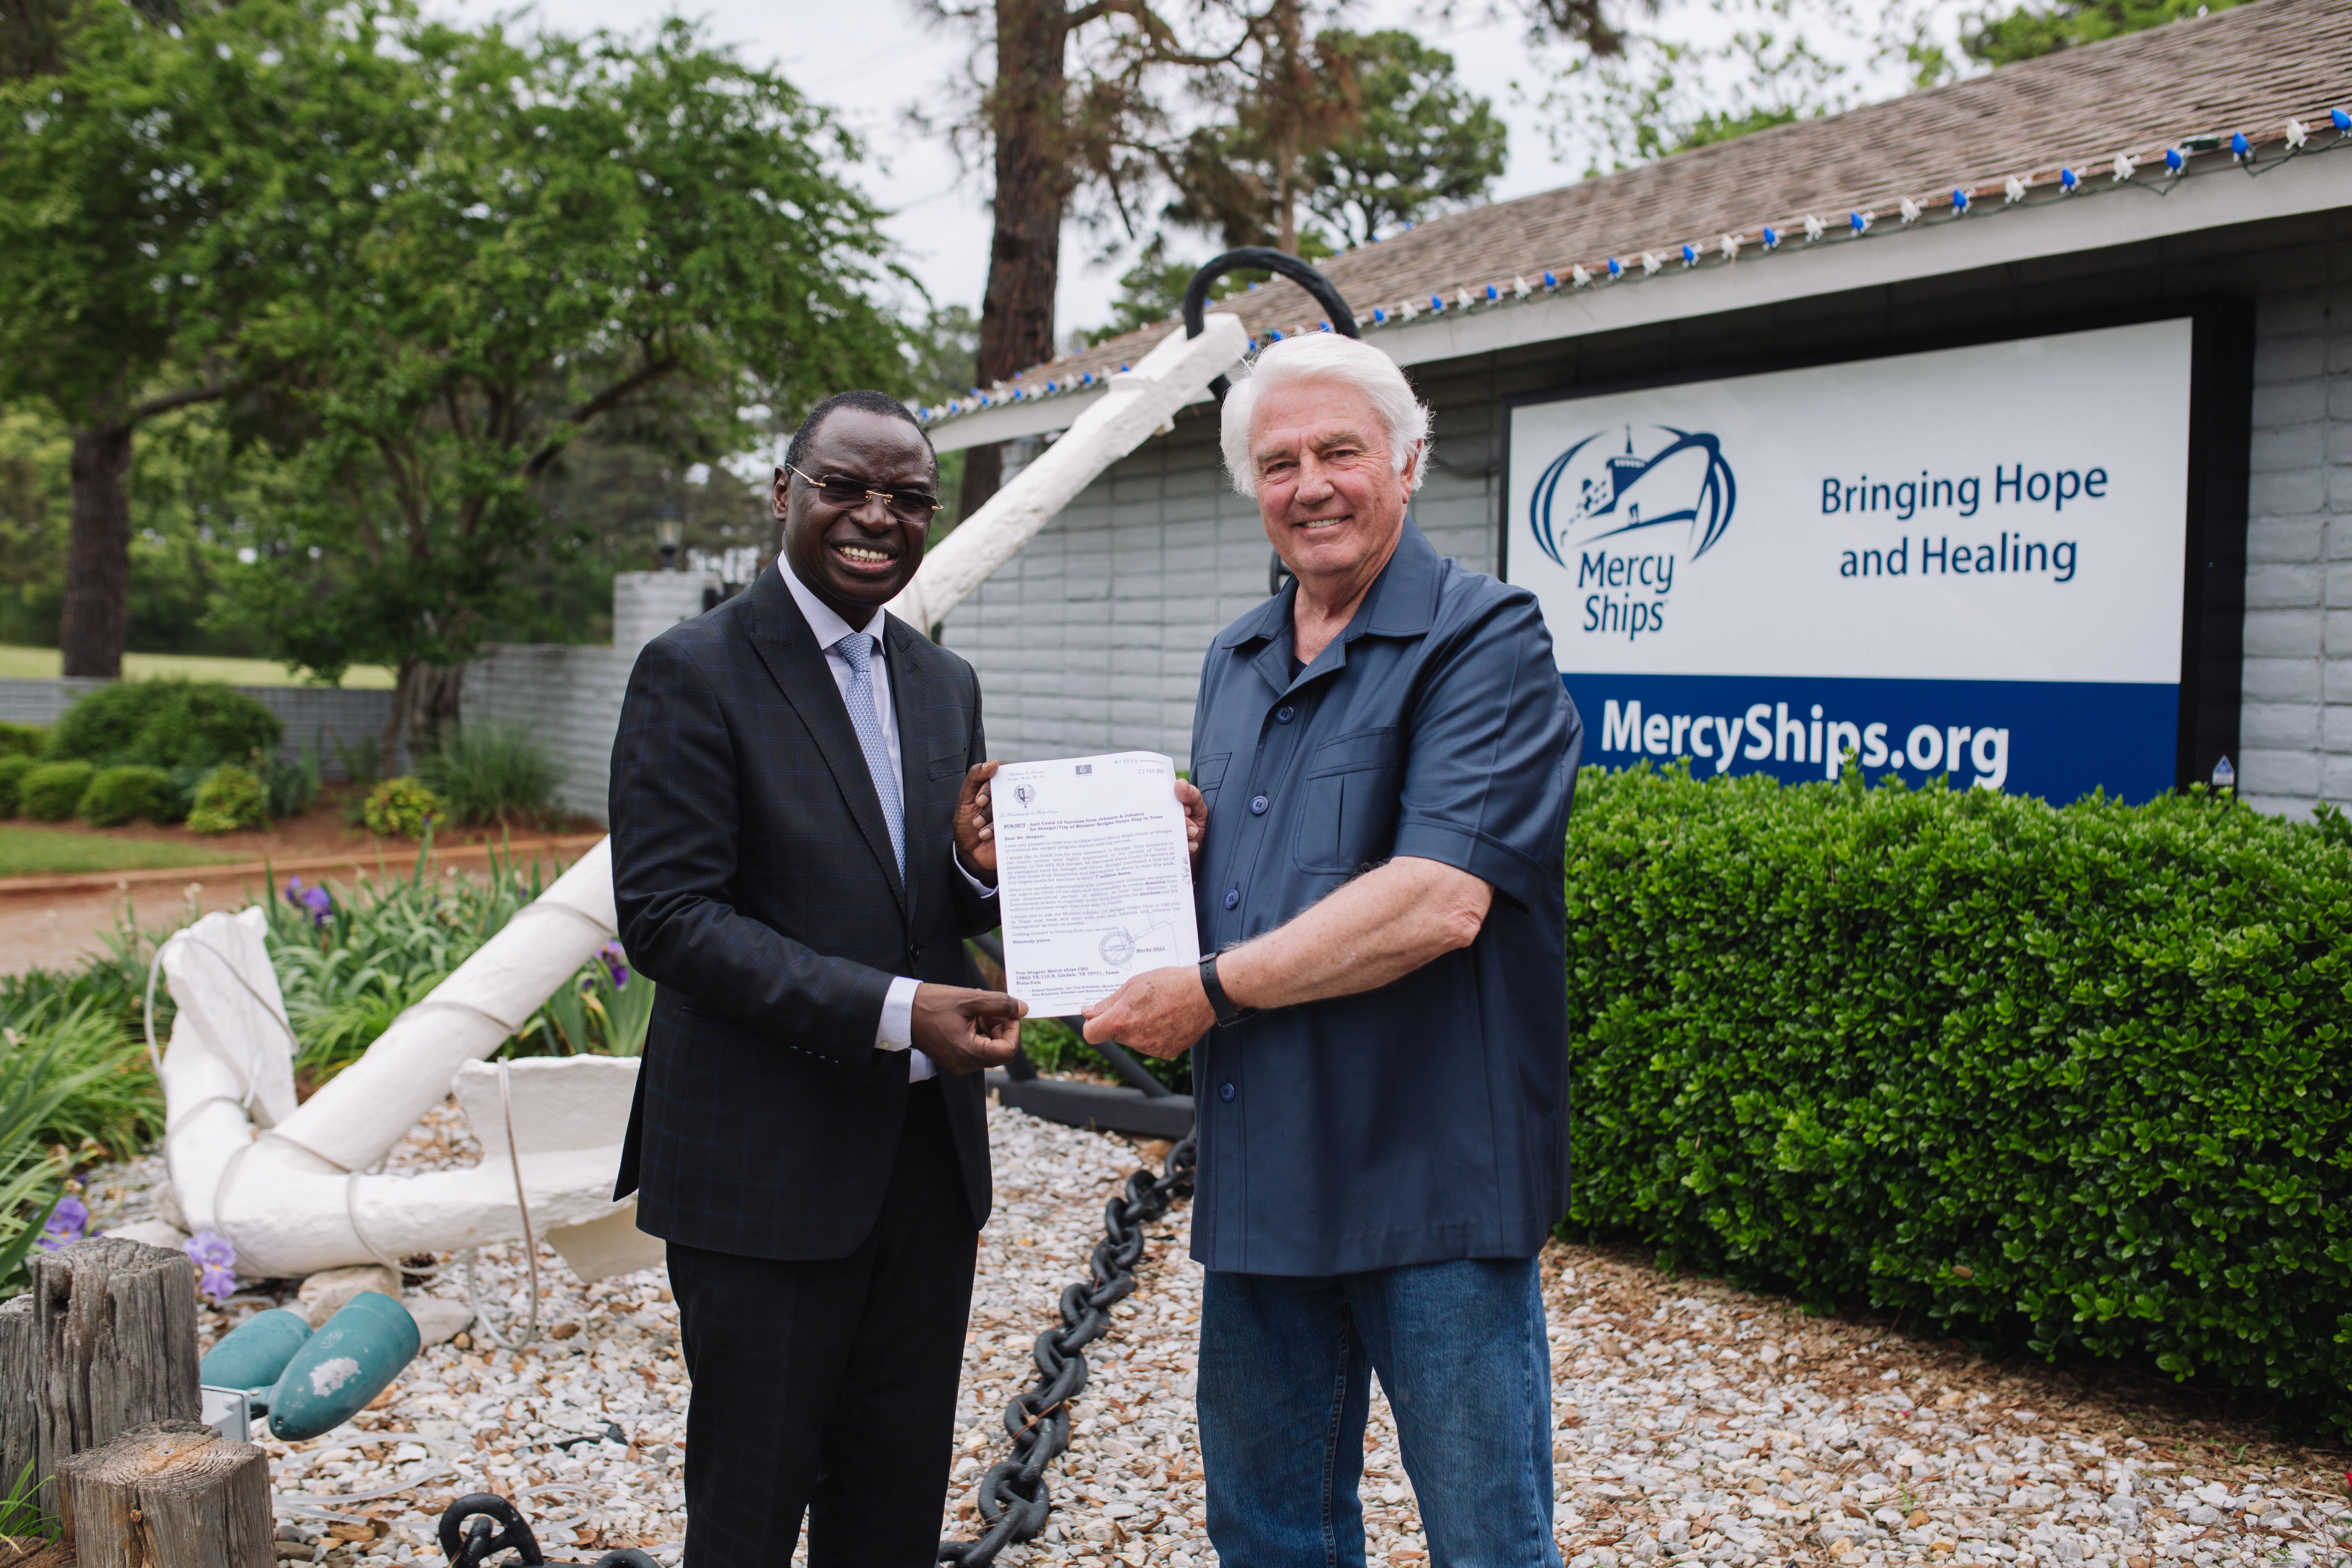 Macky Sall, Präsident des Senegal, zusammen mit Mercy Ships-Gründer Don Stephens